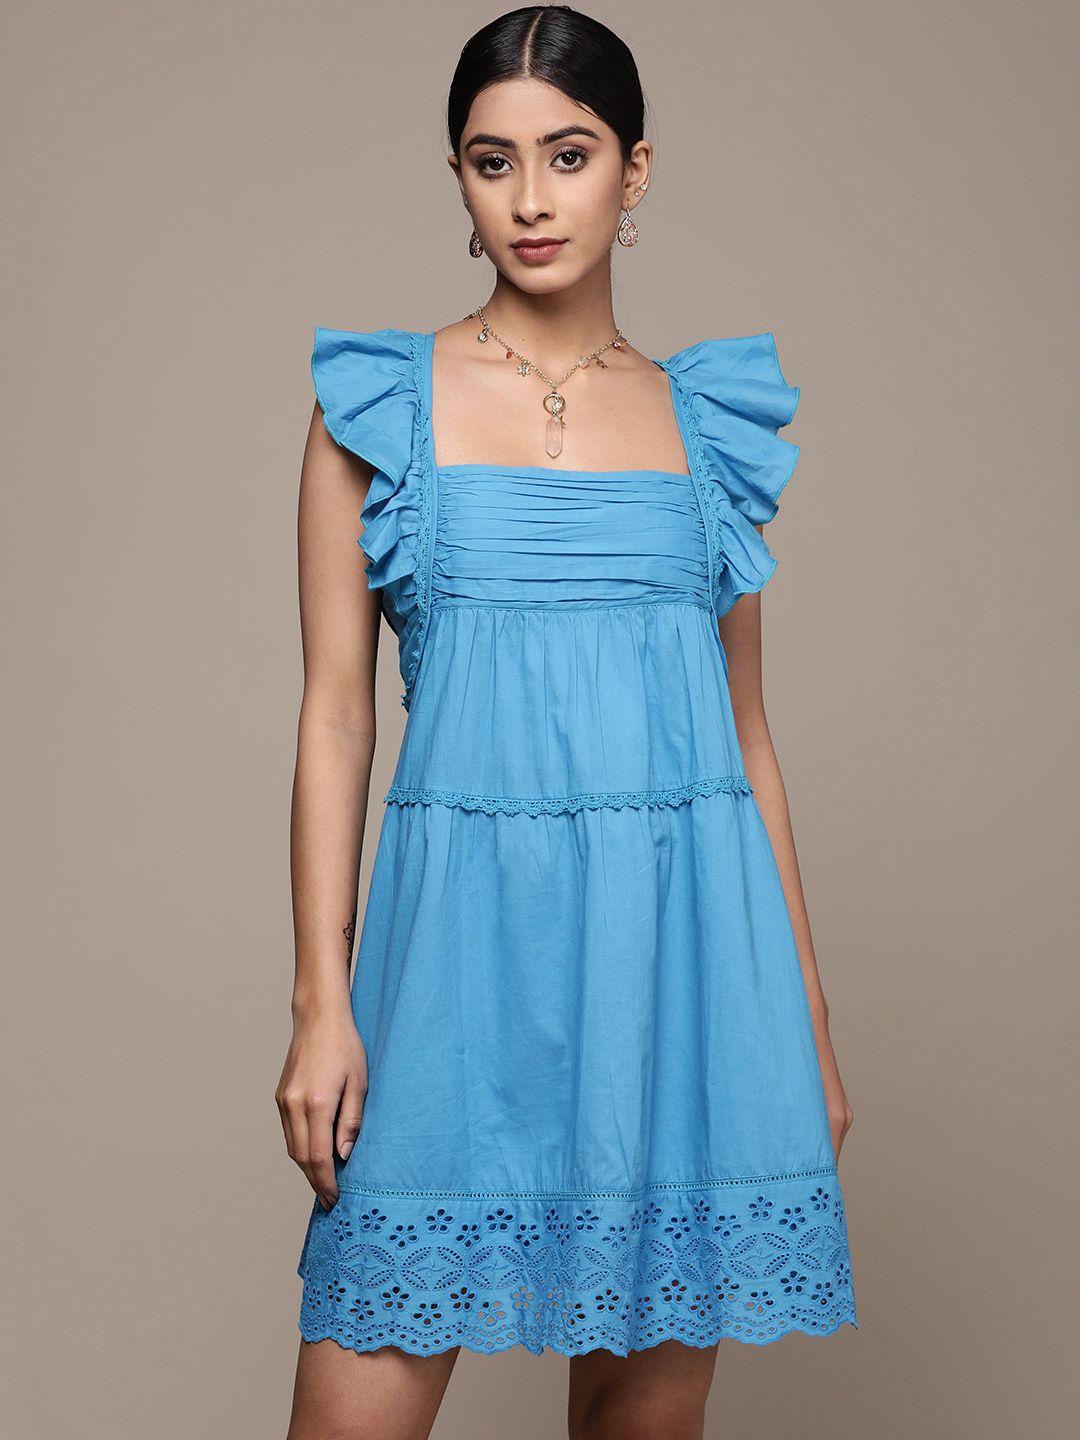 label ritu kumar blue cotton a-line dress